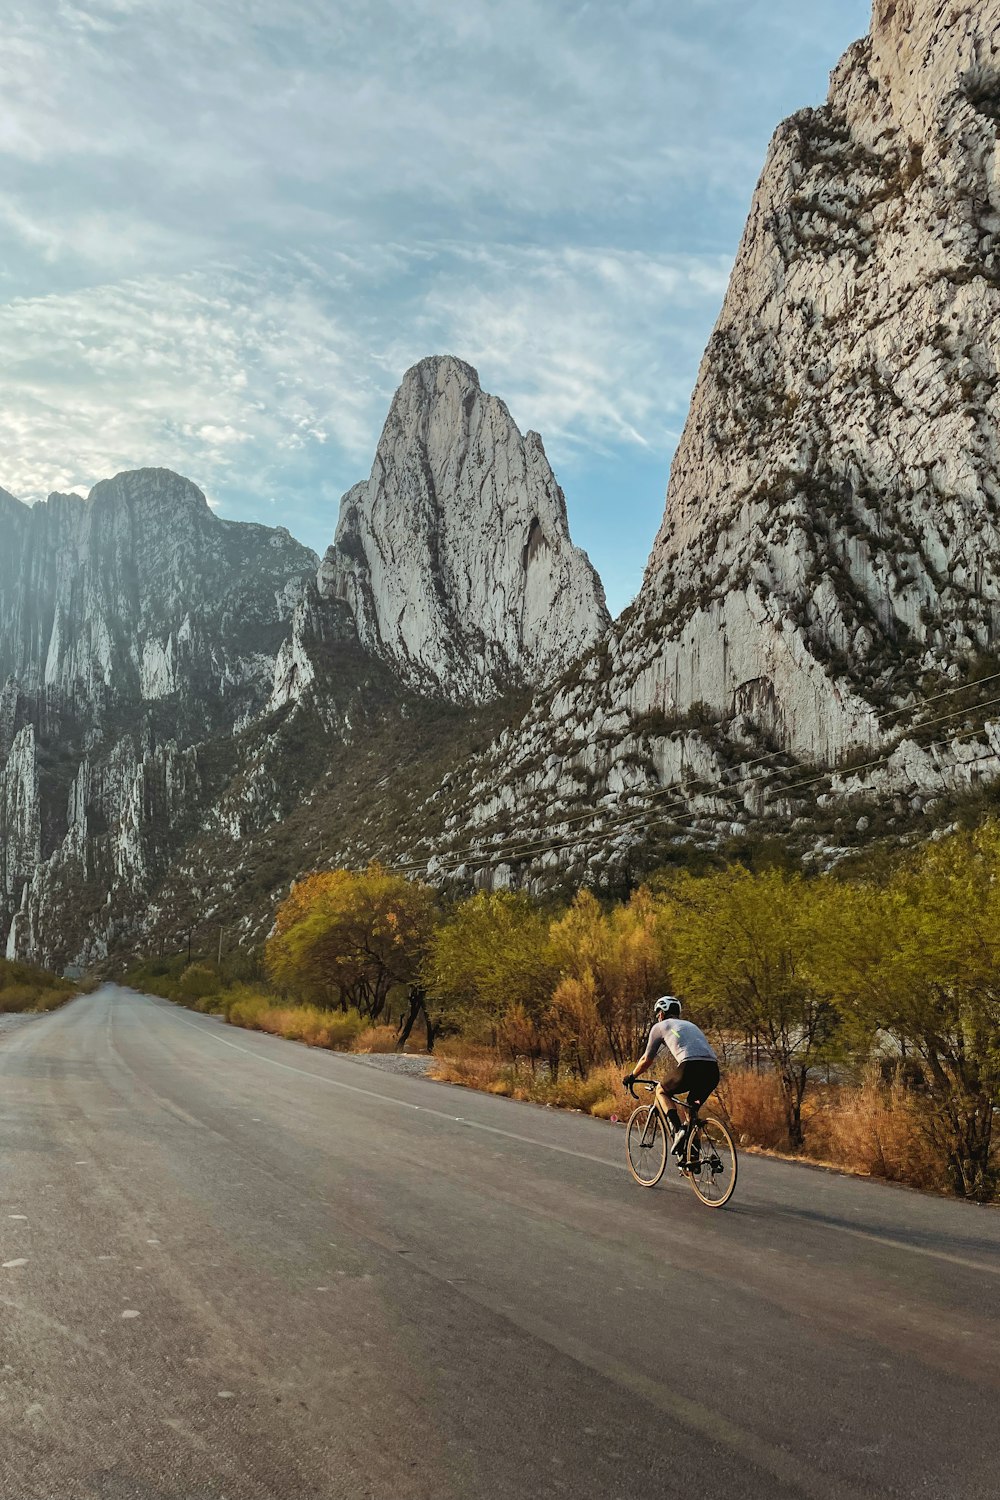 a man riding a bike down a road next to mountains